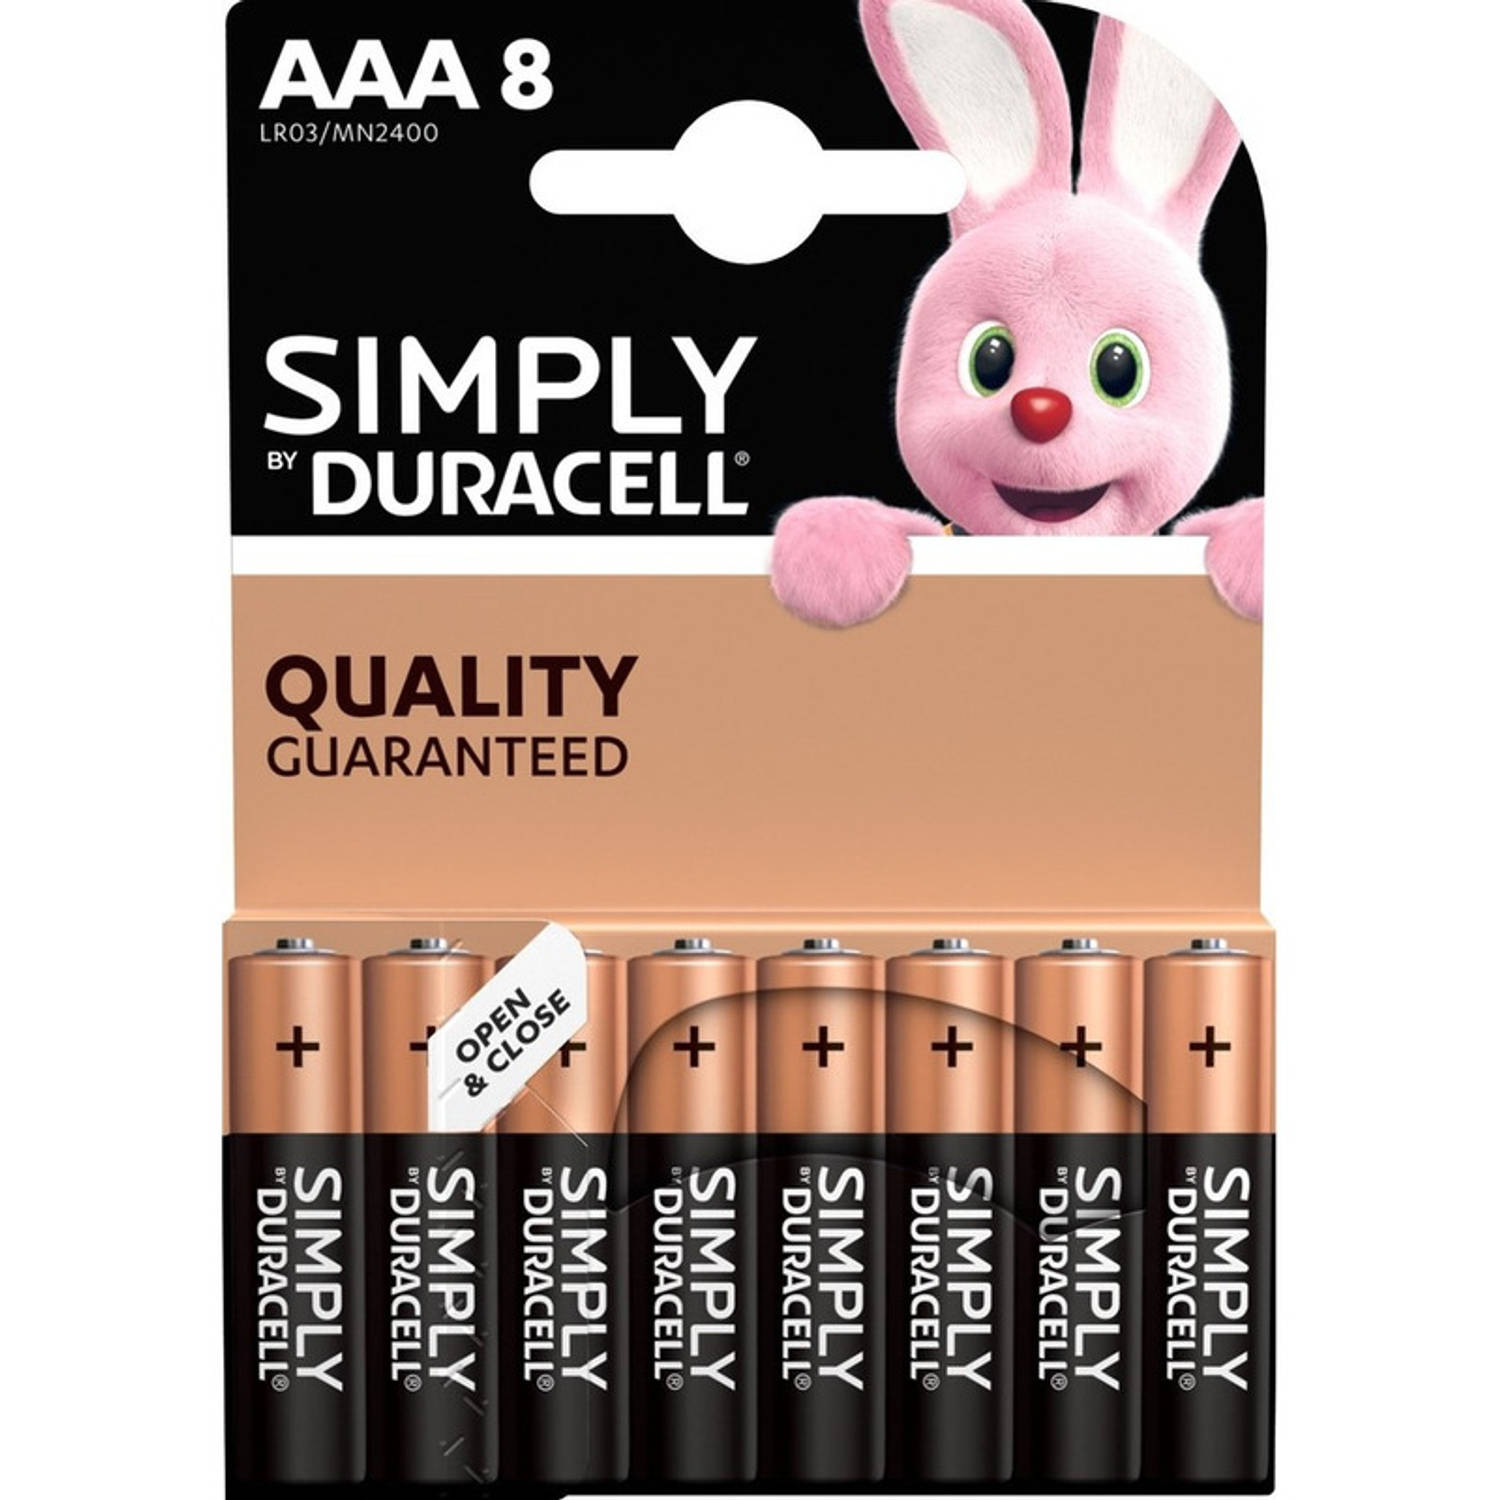 8x Duracell AAA Simply batterijen alkaline LR03 MN2400 1.5 V - Minipenlites AAA batterijen